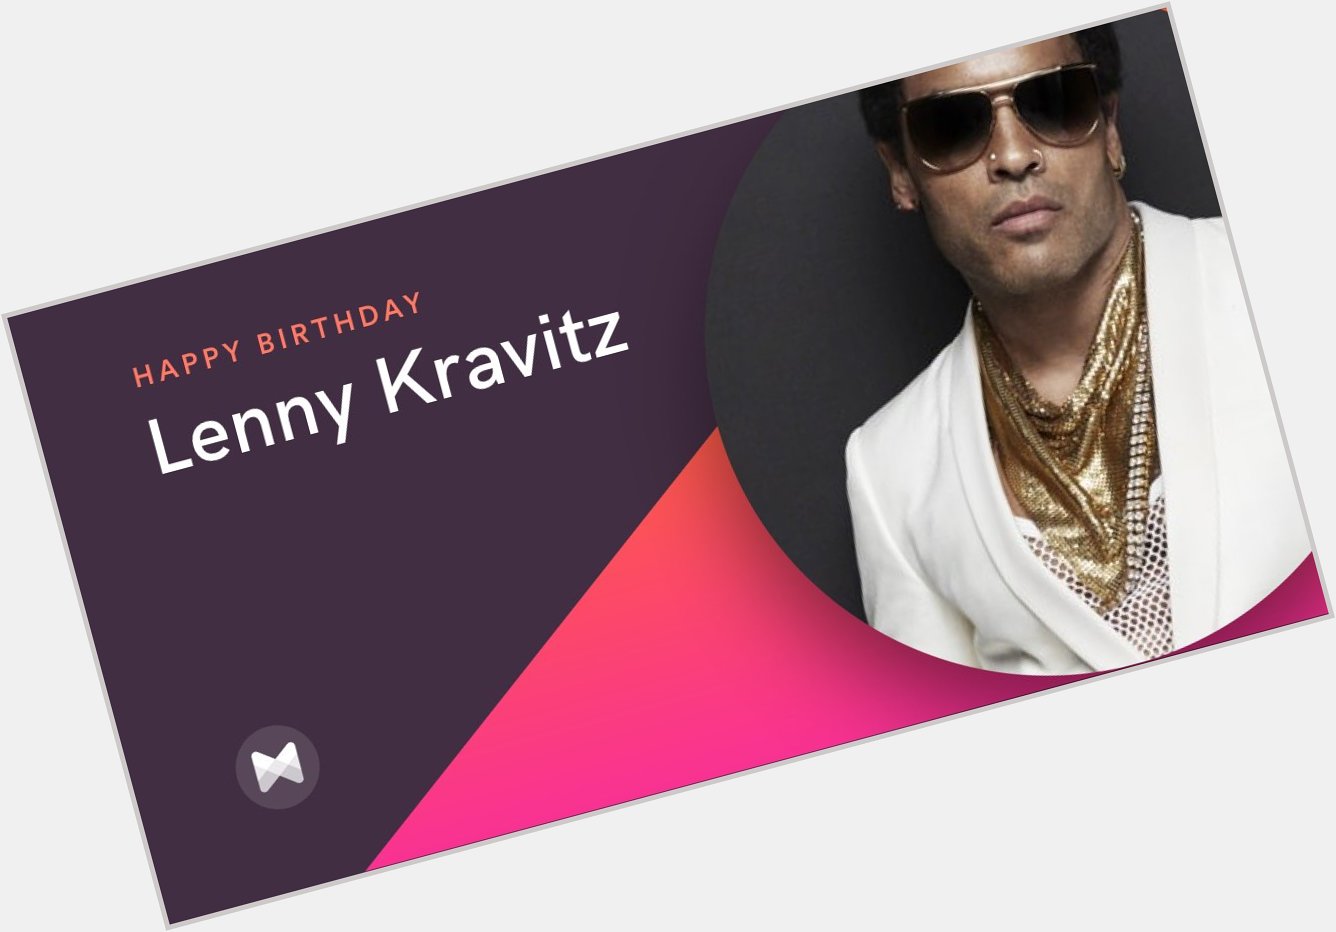   Happy Birthday Lenny Kravitz who turns 53 today!  